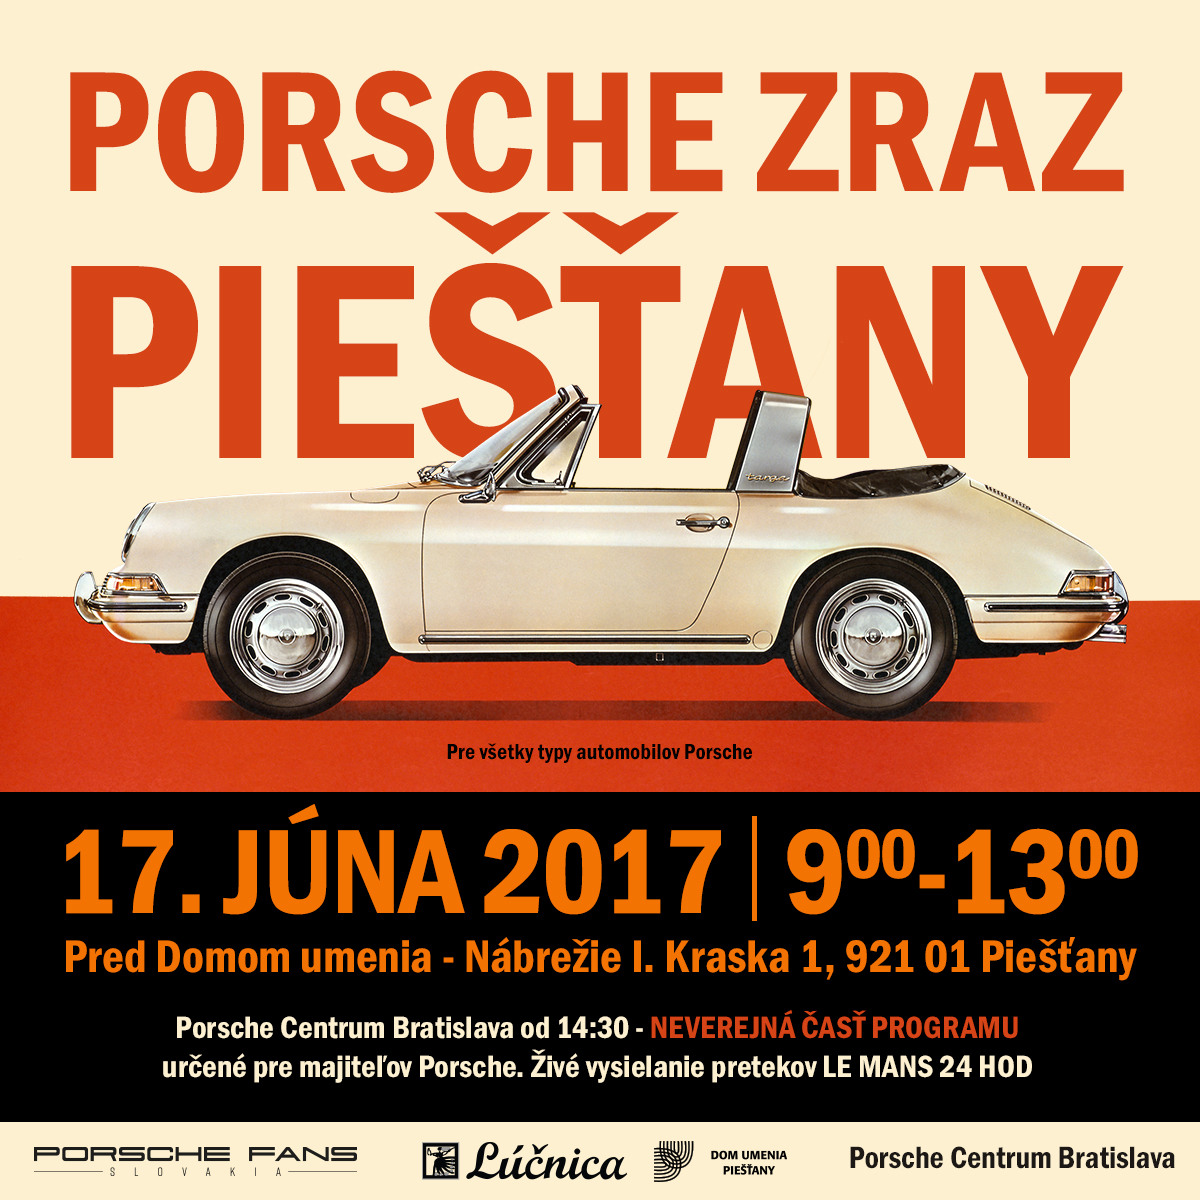 Porsche Zraz Piešťany